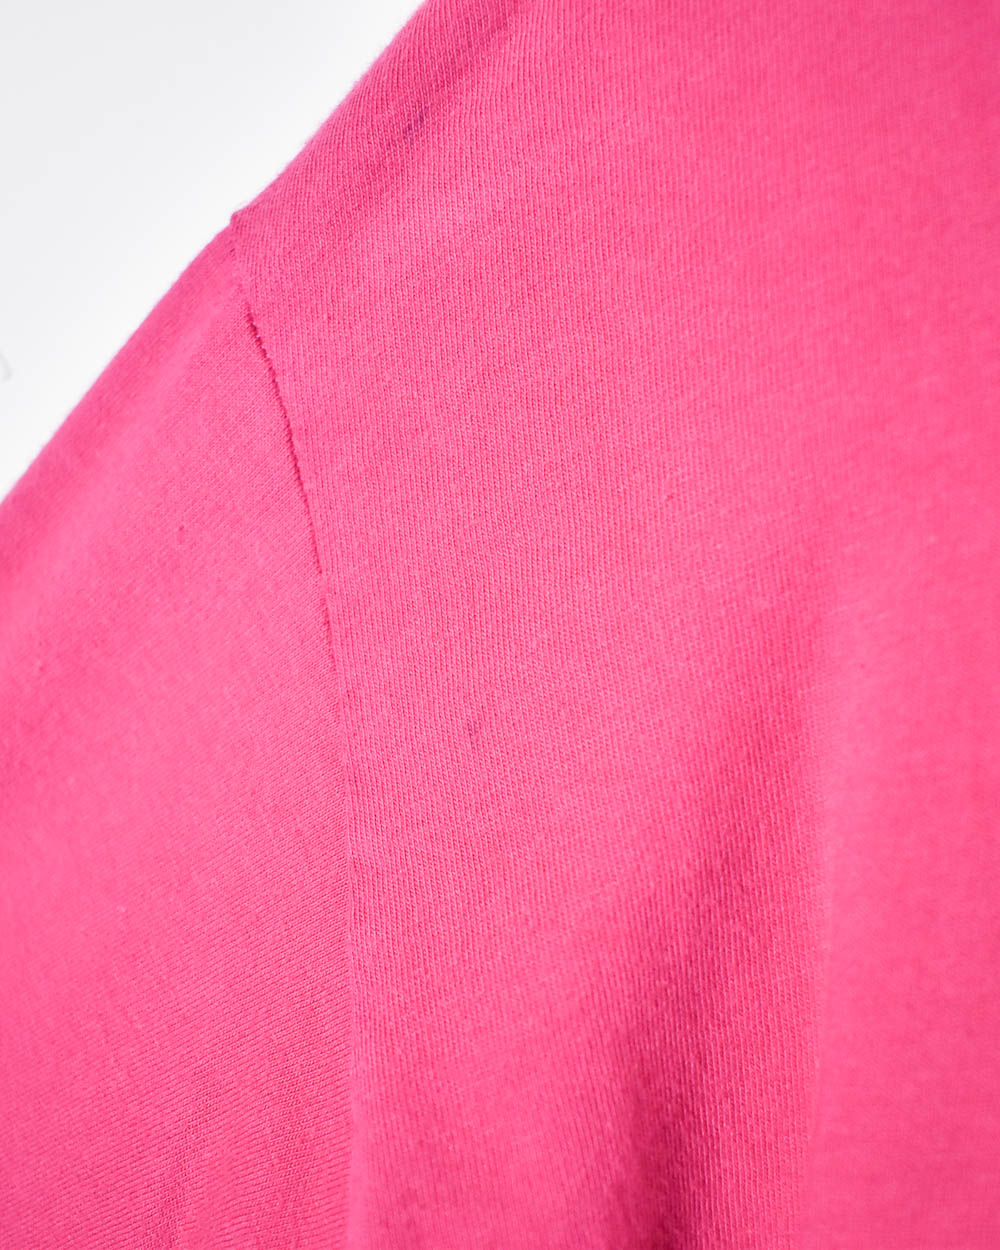 Pink Adidas T-Shirt - Small